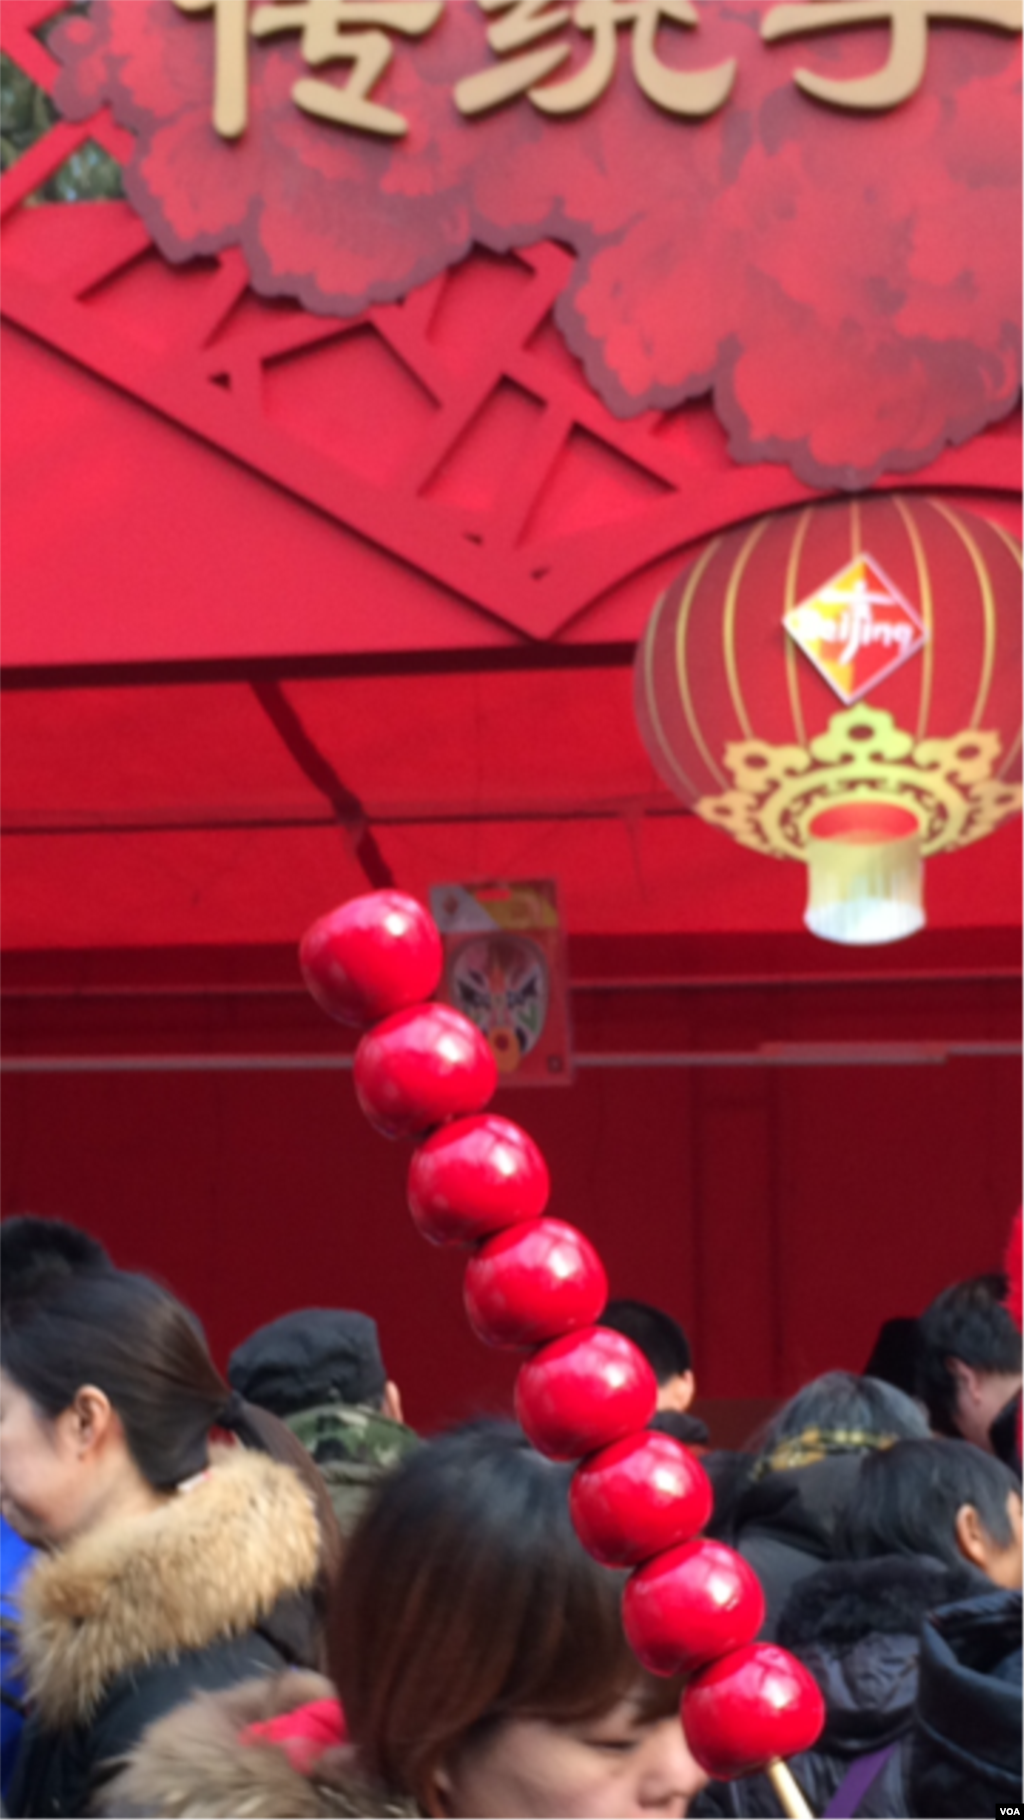 北京传统的经典食品 - 冰糖葫芦是逛庙会的一个特色。(美国之音叶兵拍摄)